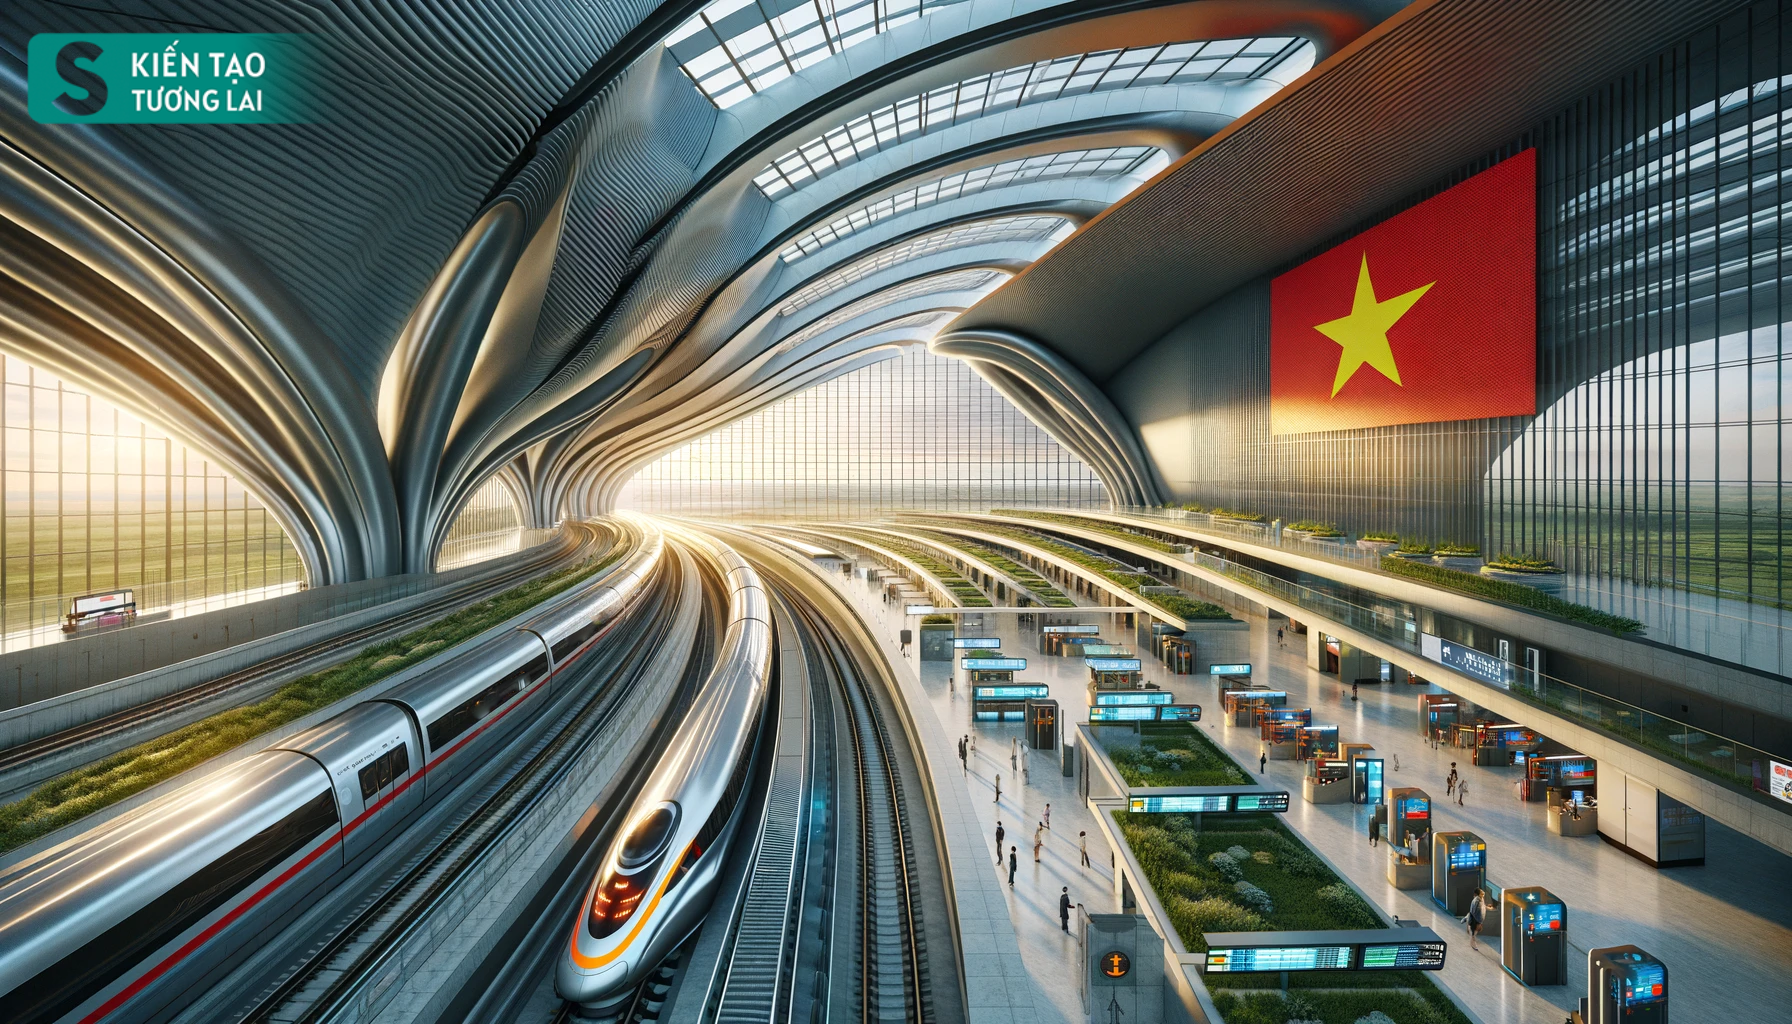 Dự án đường sắt tốc độ cao 70 tỷ USD ở Việt Nam nhận chỉ đạo 'nóng' gì từ Bộ Chính trị?- Ảnh 1.